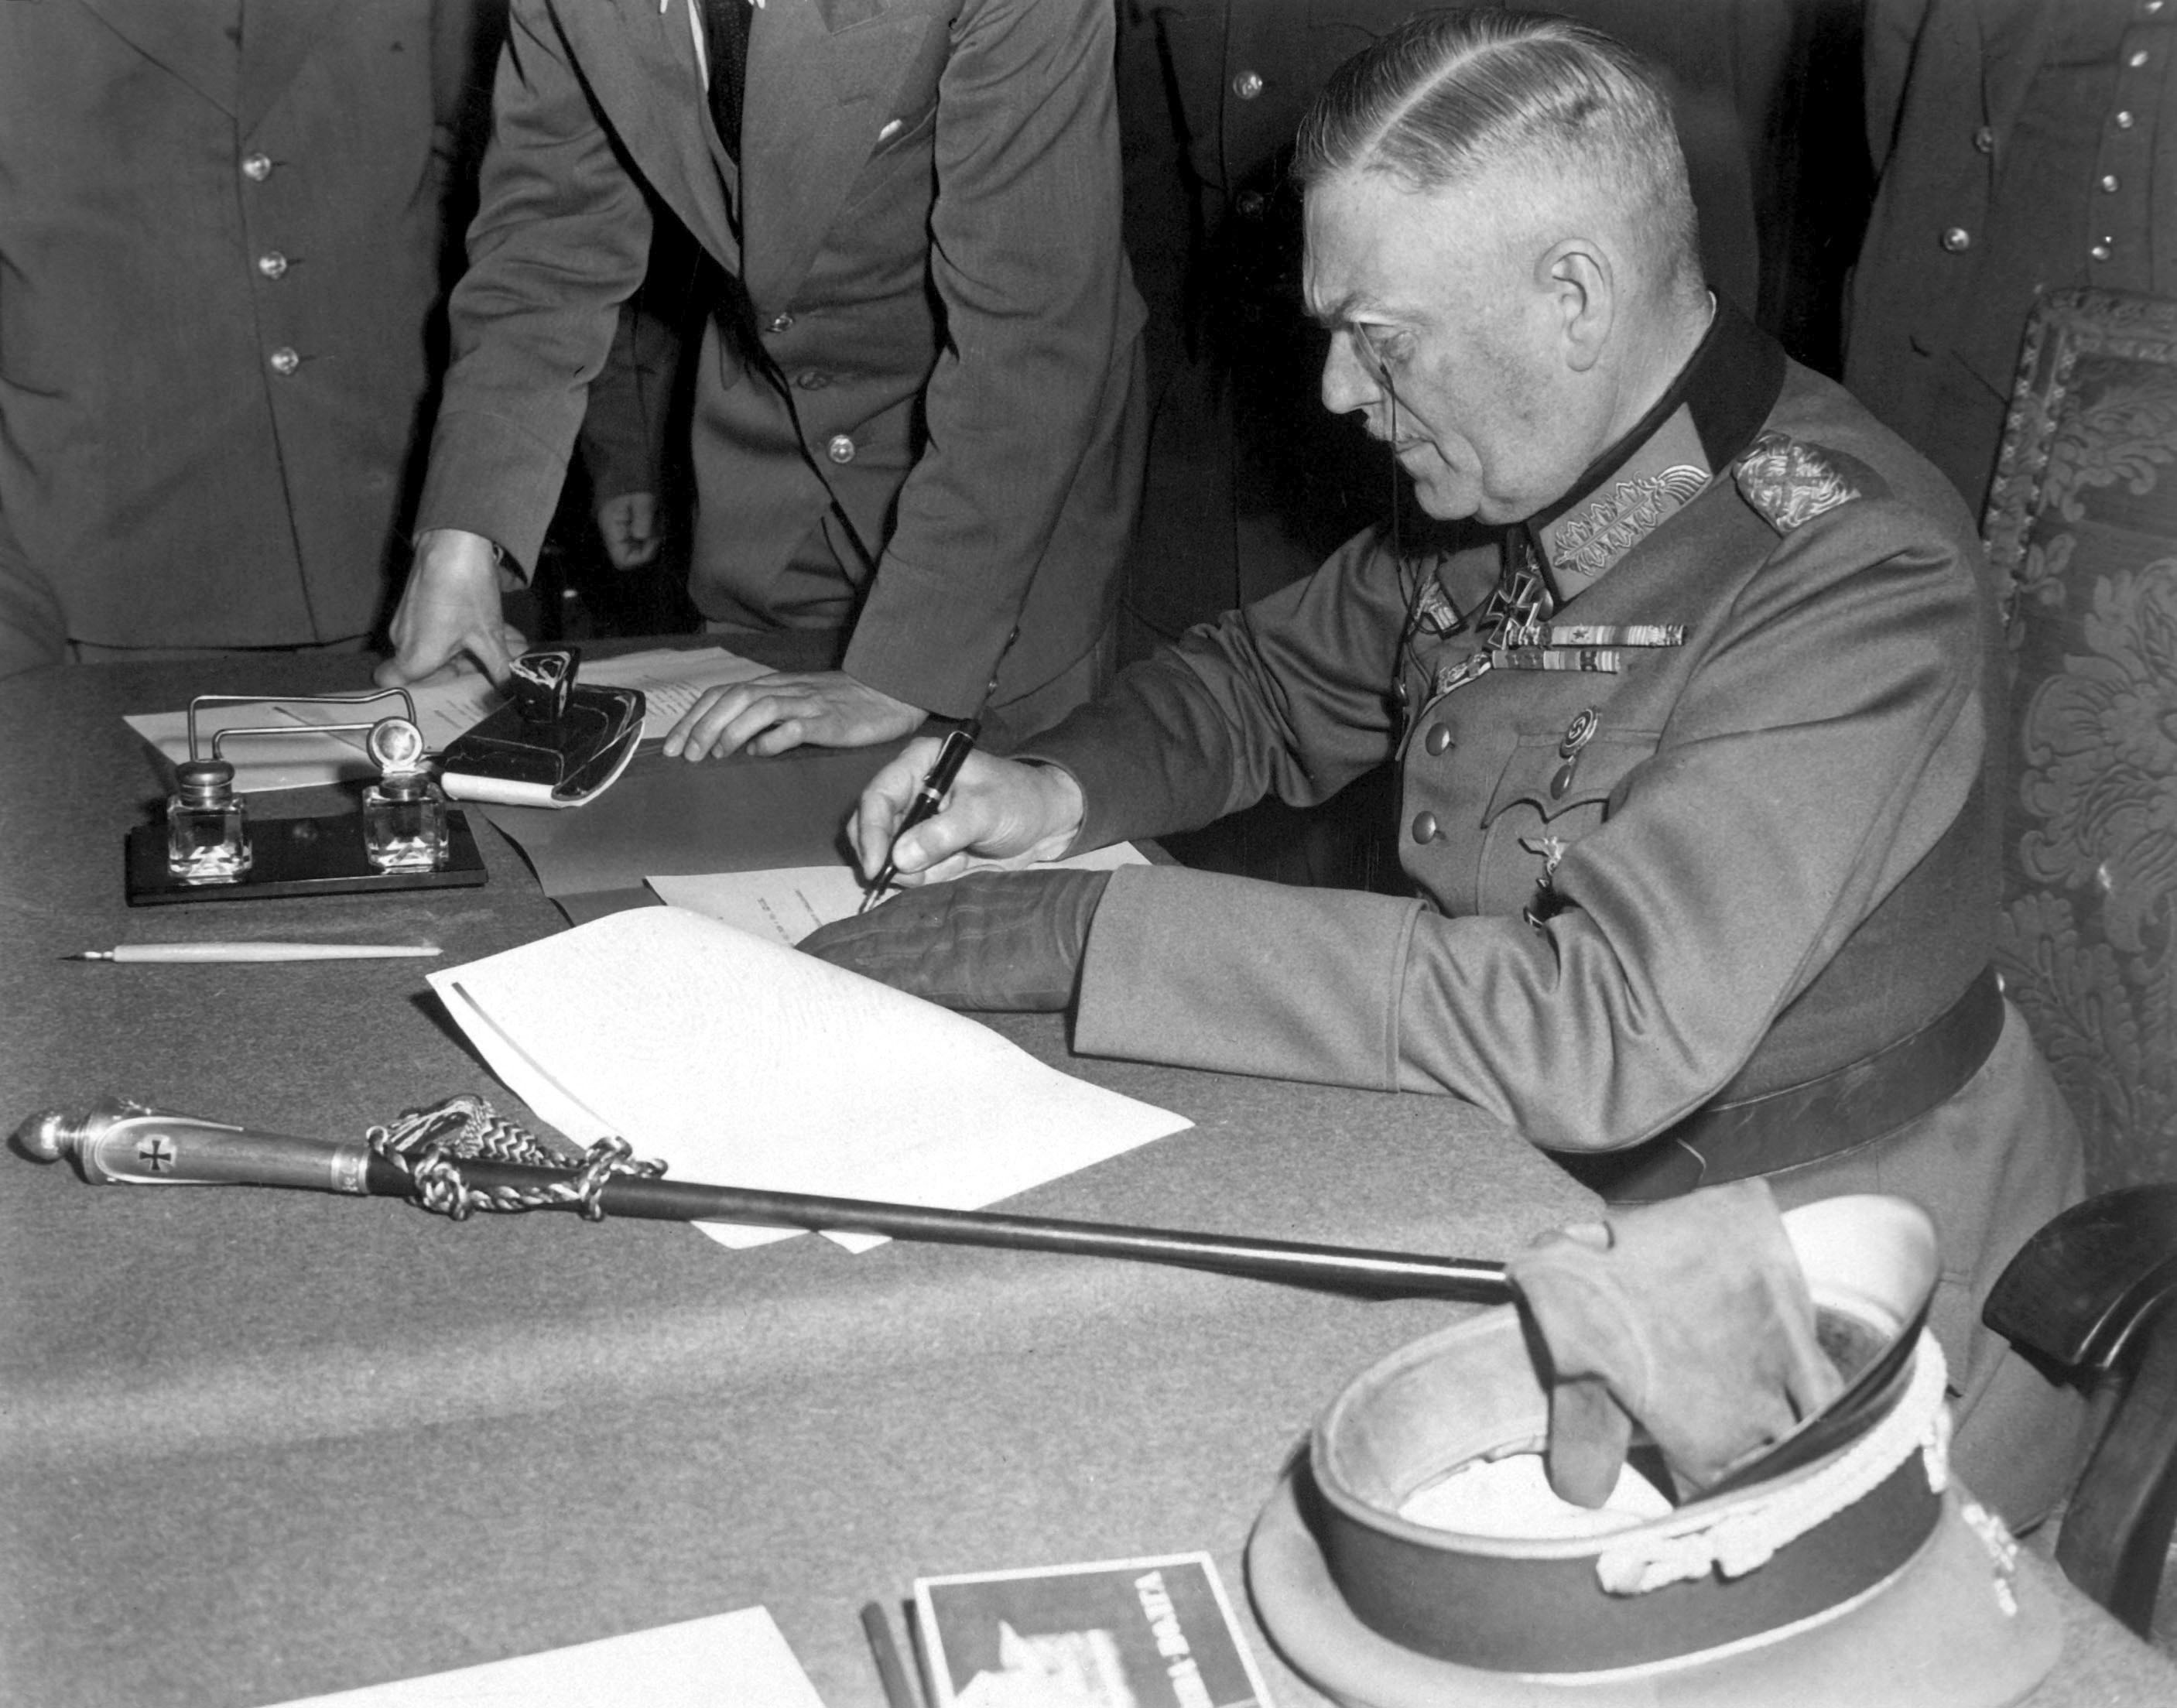 Feldmarszałek Wilhelm Keitel podpisuje warunki poddania niemieckiej armii w siedzibie rosyjskiej kwatery w Berlinie 7 maja 1945 roku (fot. Lt. Moore (US Army) - National Archives and Records Administration, źródło: domena publiczna).